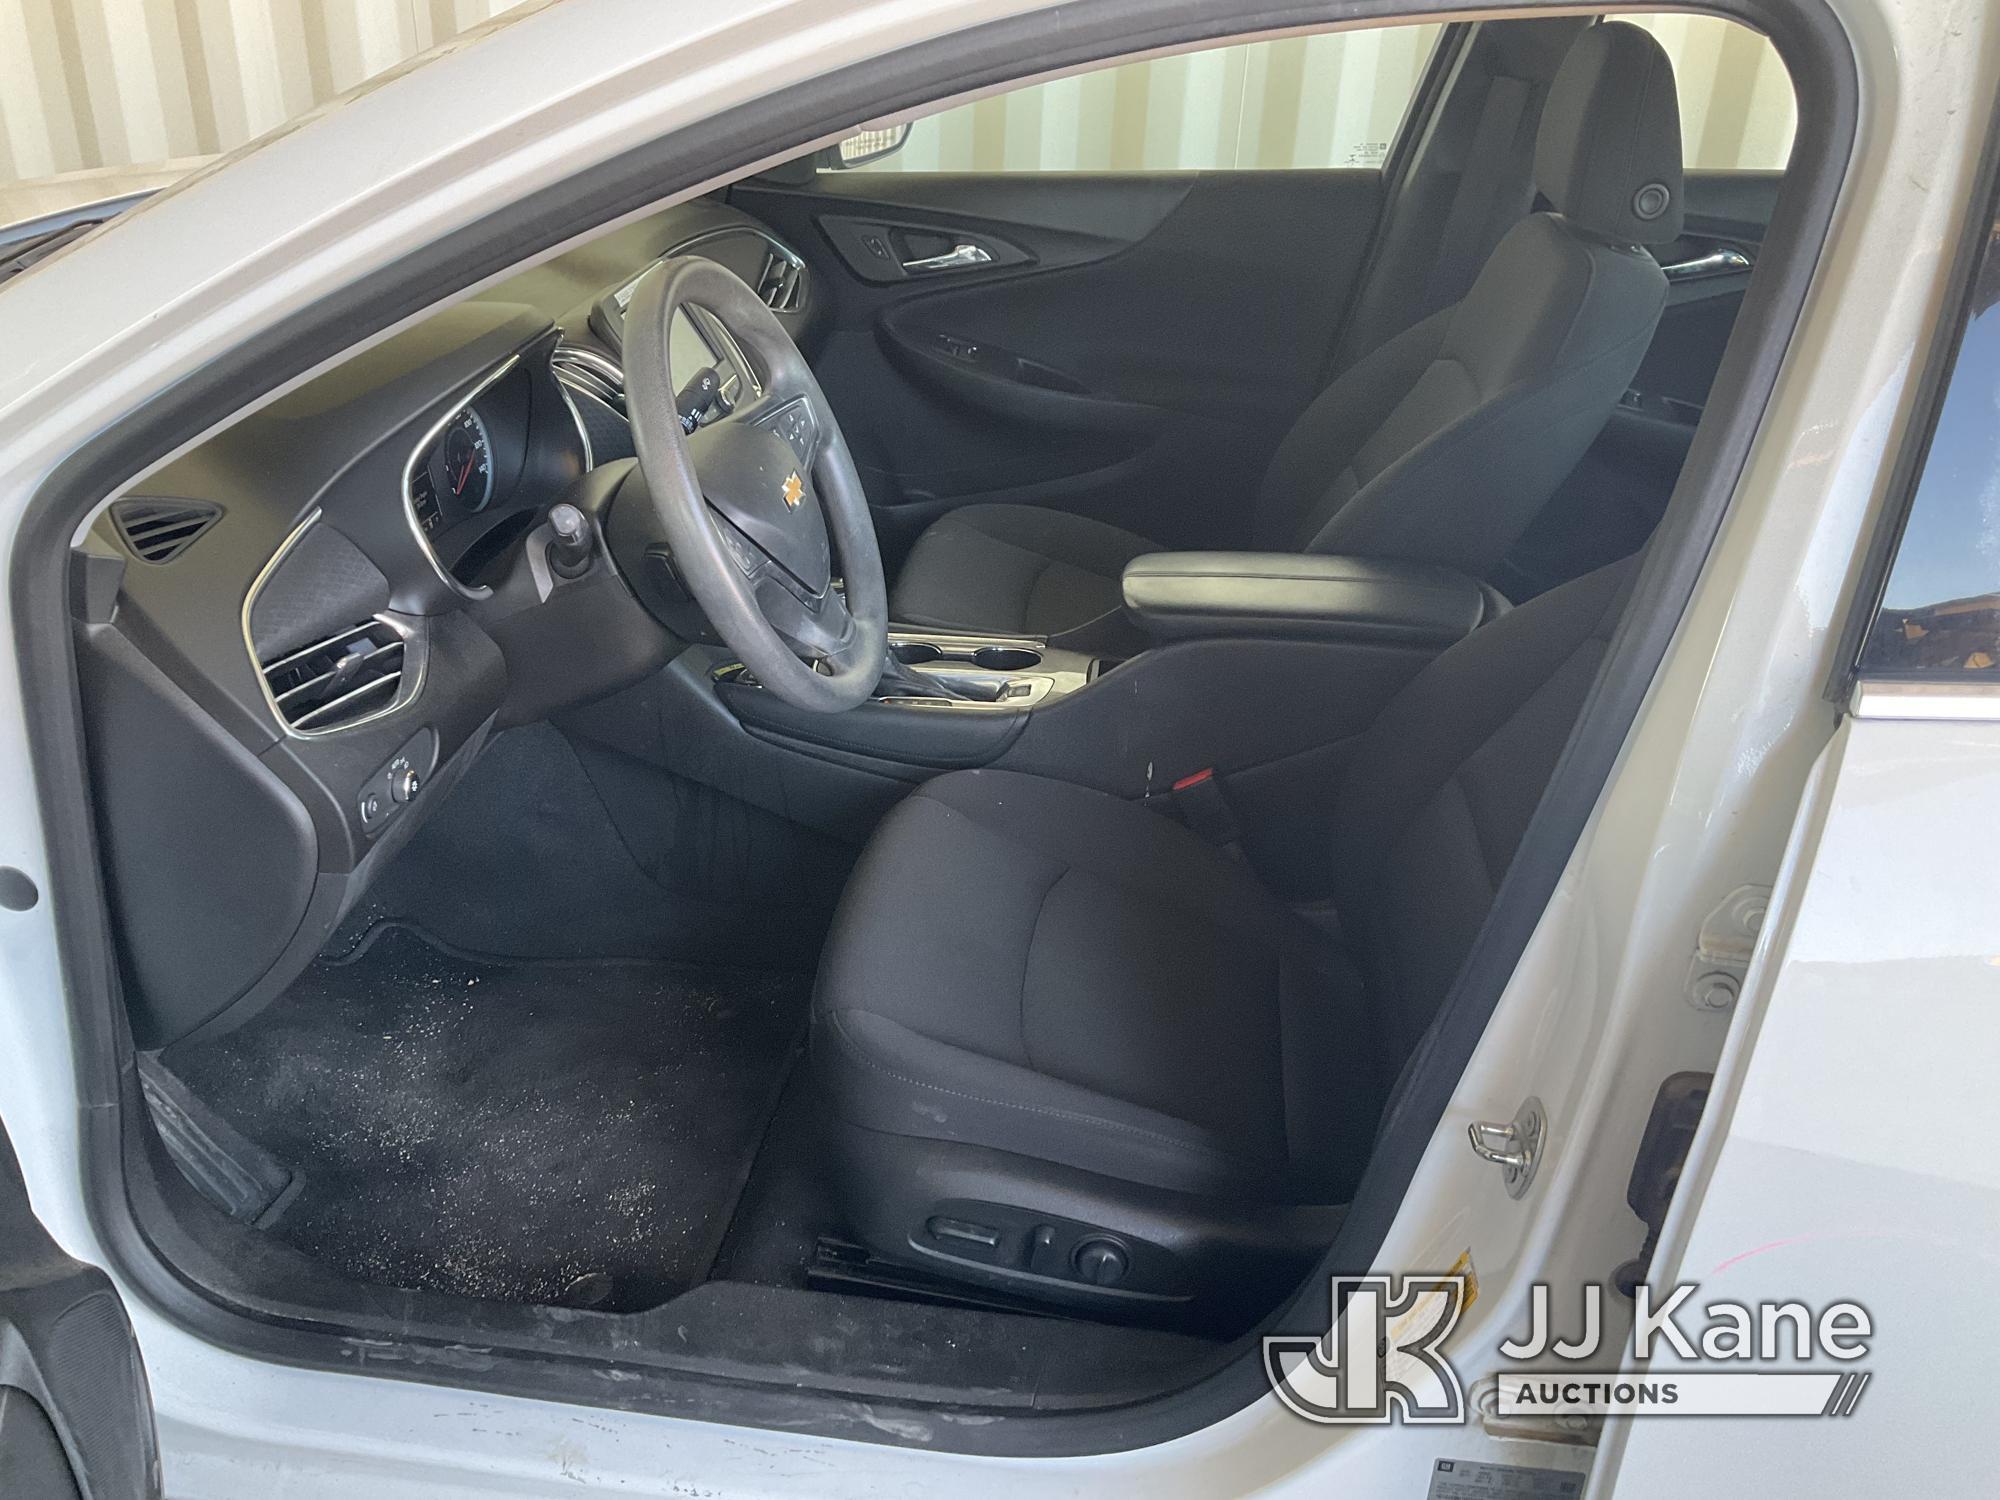 (Jurupa Valley, CA) 2017 Chevrolet Malibu Hybrid 4-Door Hybrid Sedan Runs & Moves, Has Body Damage,